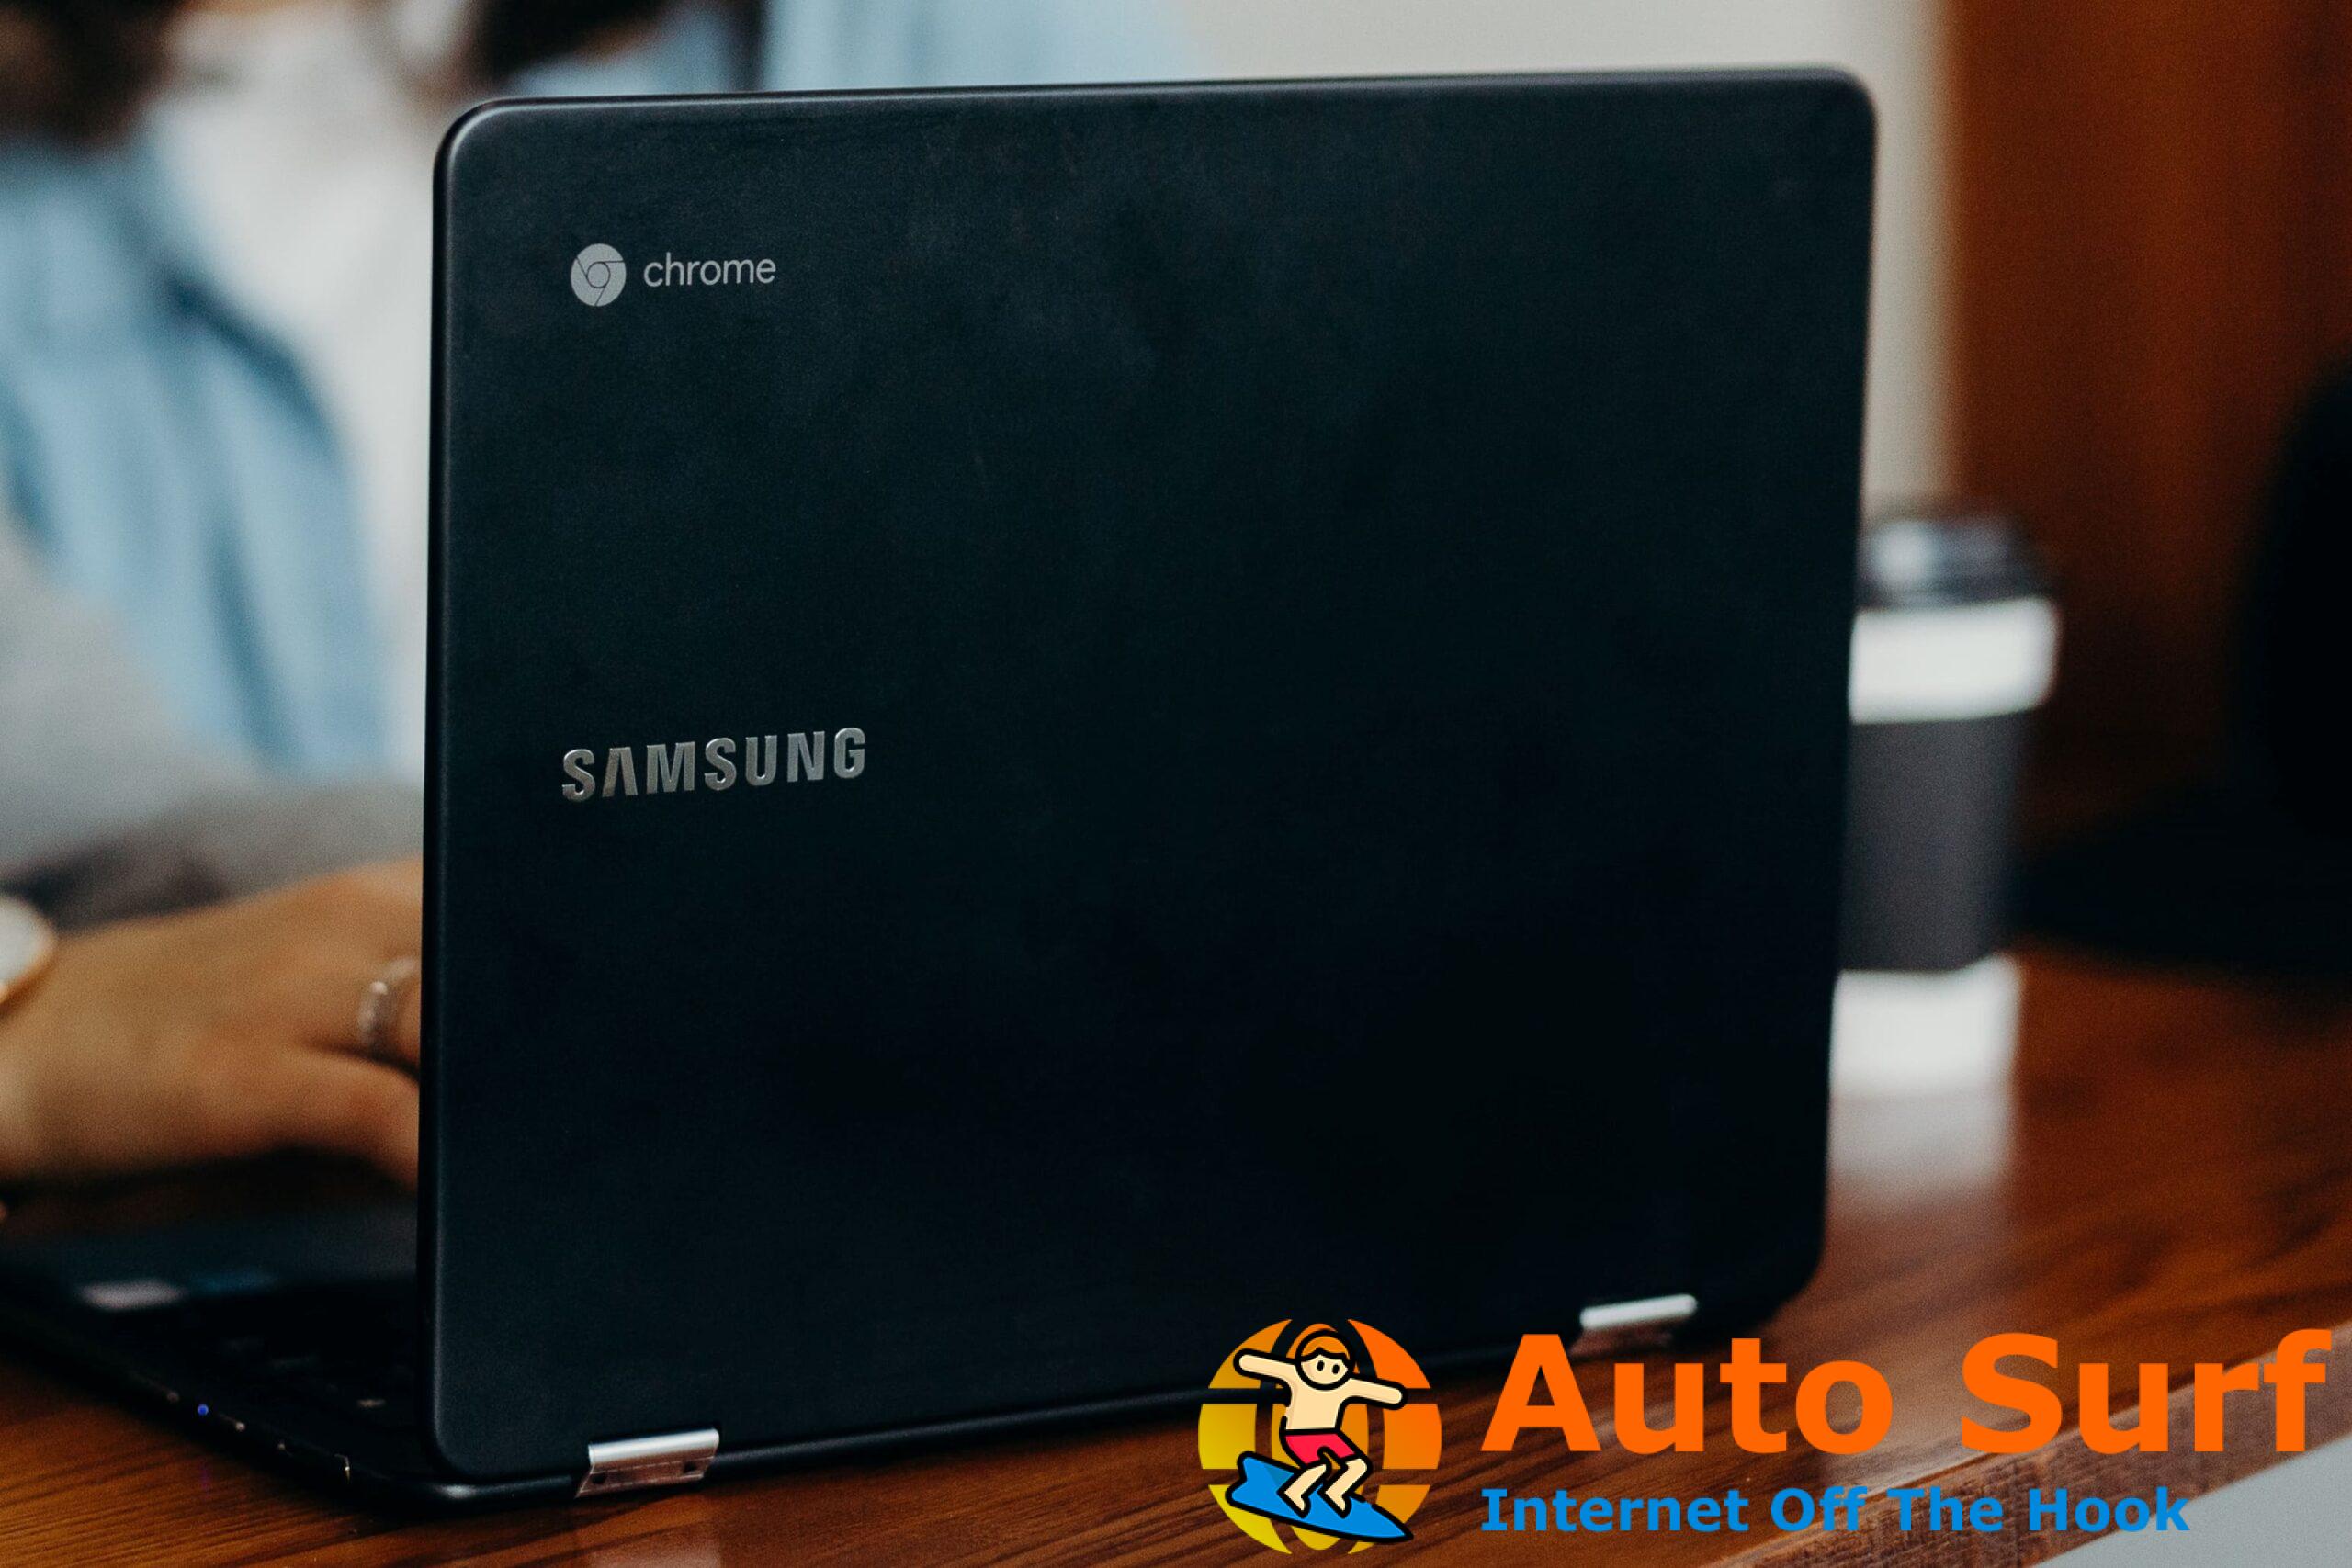 Repare la computadora portátil Samsung si no arranca después de la actualización del software